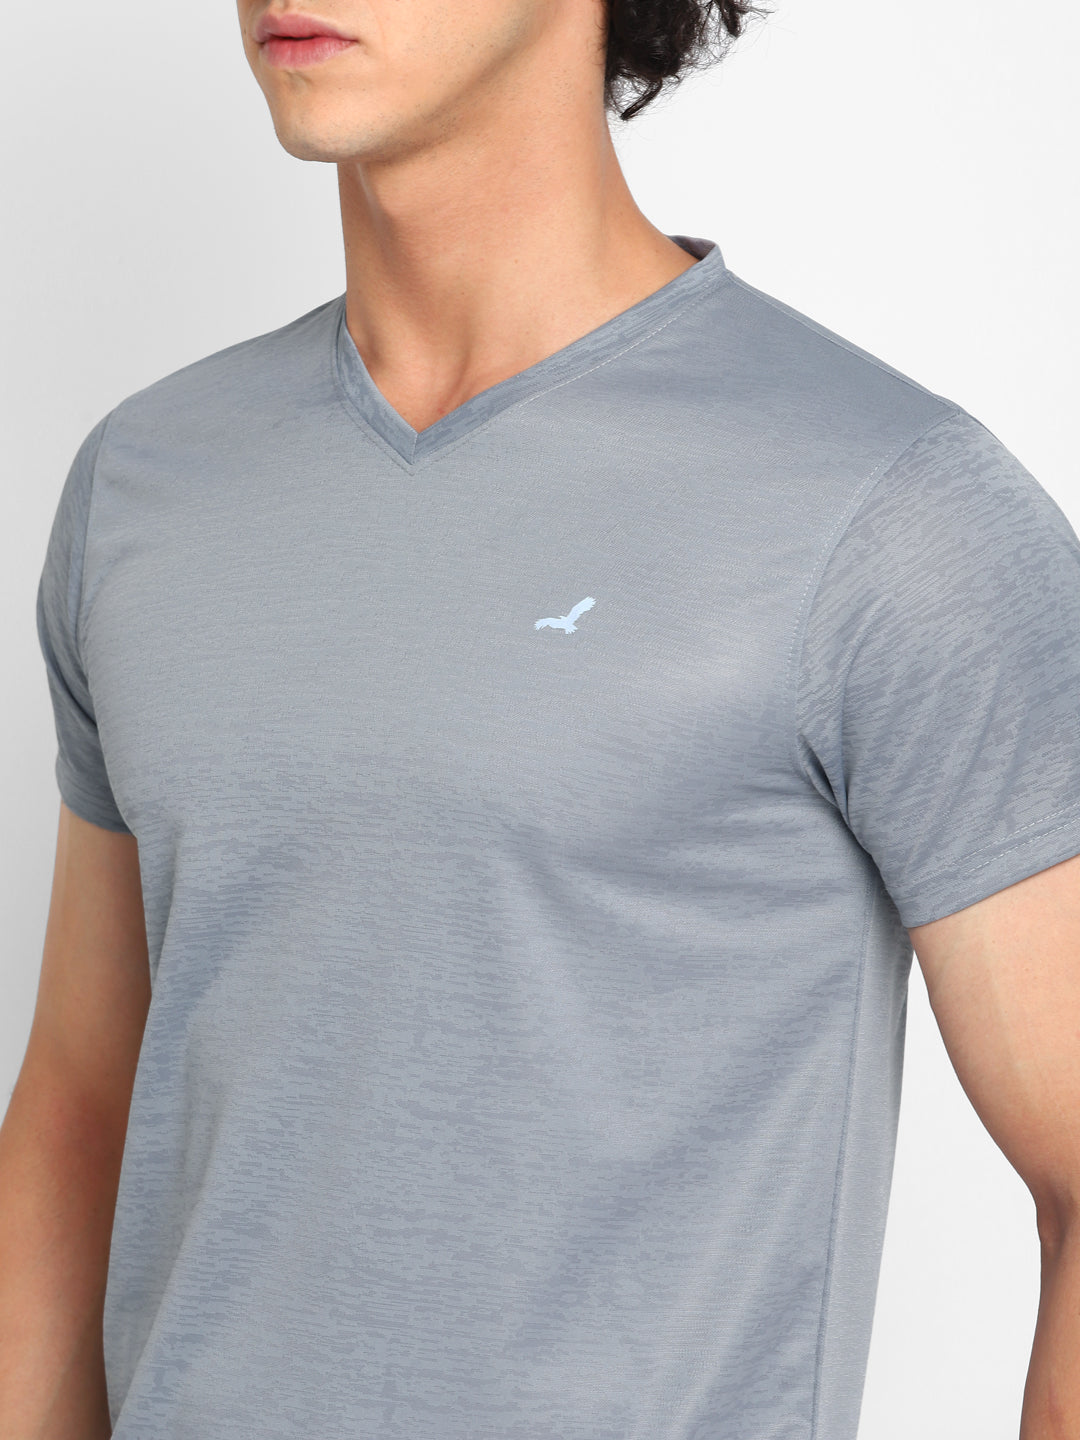 V Neck Sports T-Shirt for Men - Grey Jaquard (No Exchange No Return)